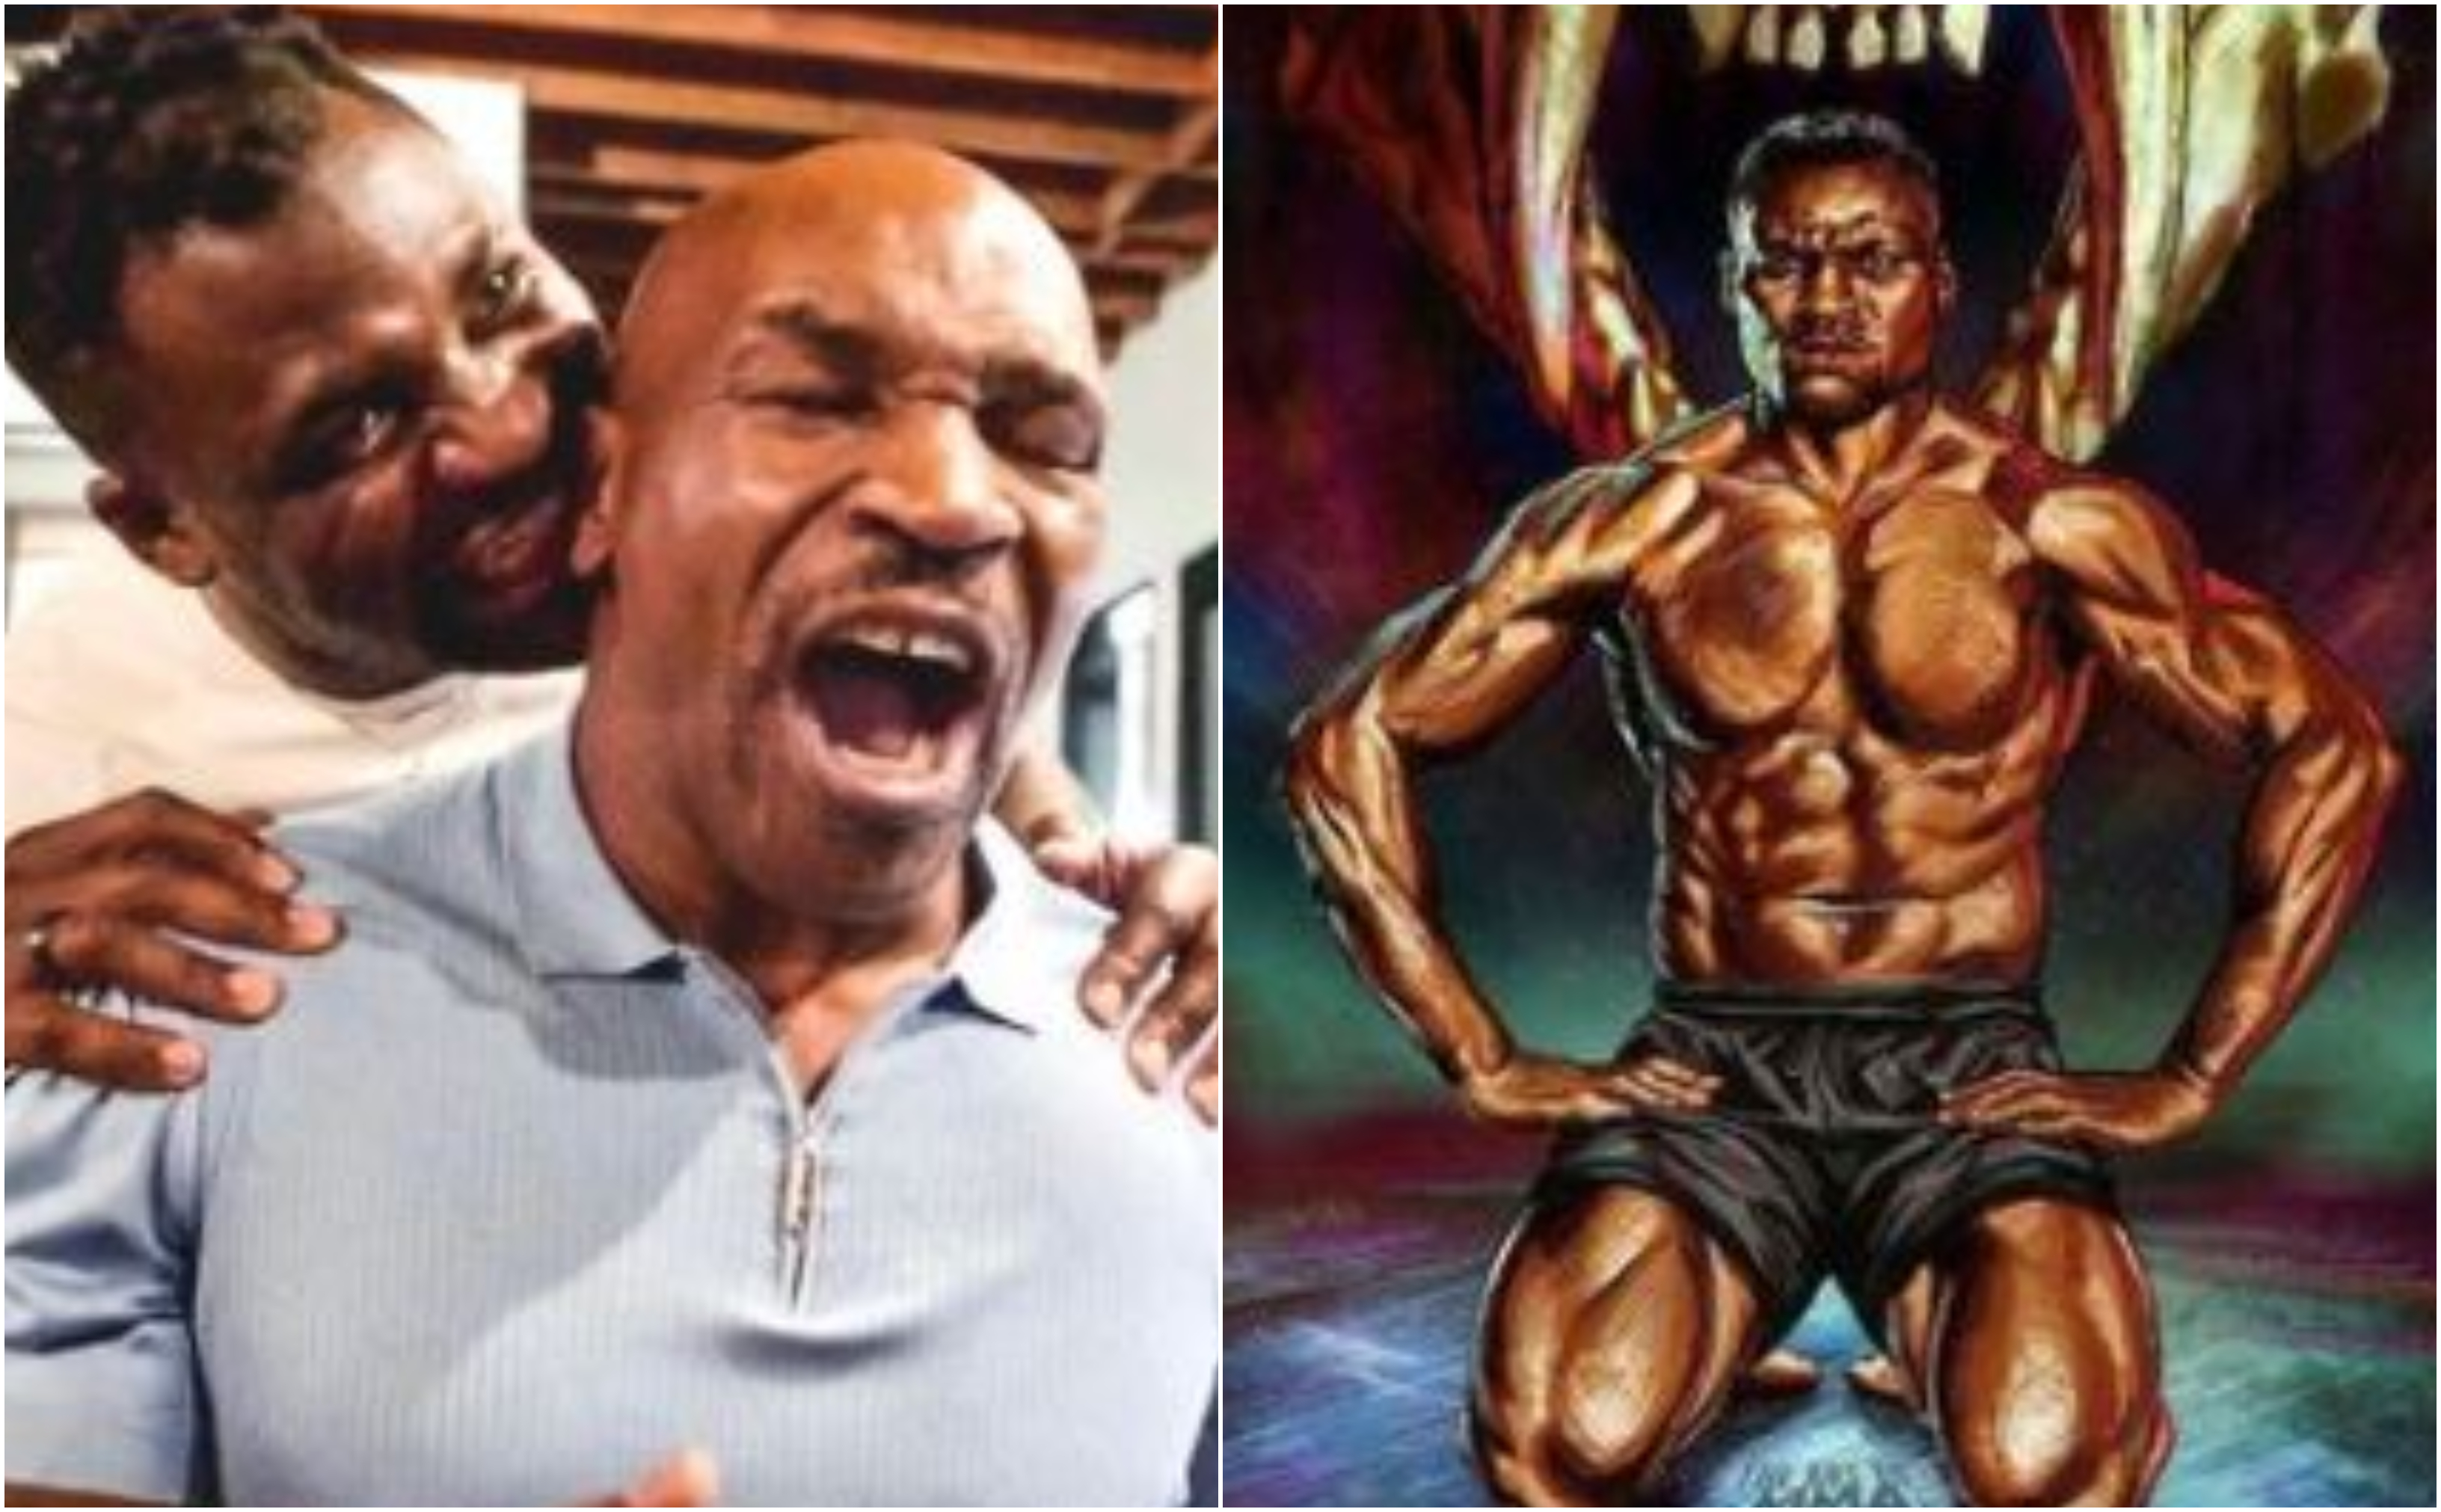 Un video viral muestra a Francis Ngannou, campeón camerunés de los Pesos Pesados de UFC, imitando, a modo de broma, una de las acciones más  comentadas de Mike Tyson. Foto Prensa Libre: @francisngannou / Instagram